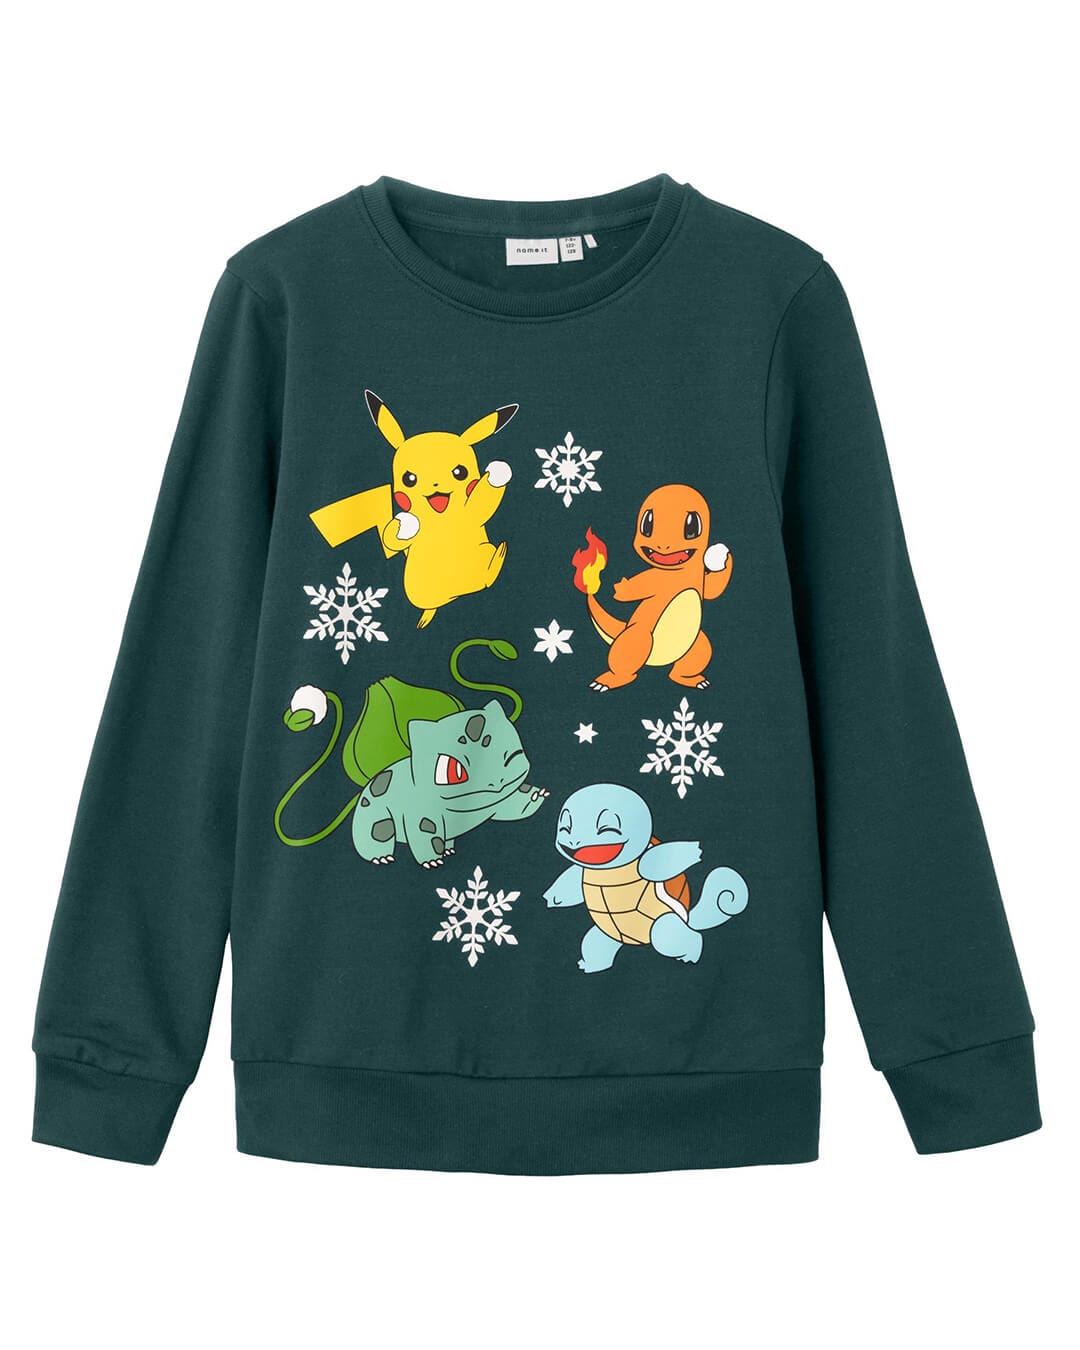 Name It Jumpers Name It Christmas Pokemon Green Sweatshirt